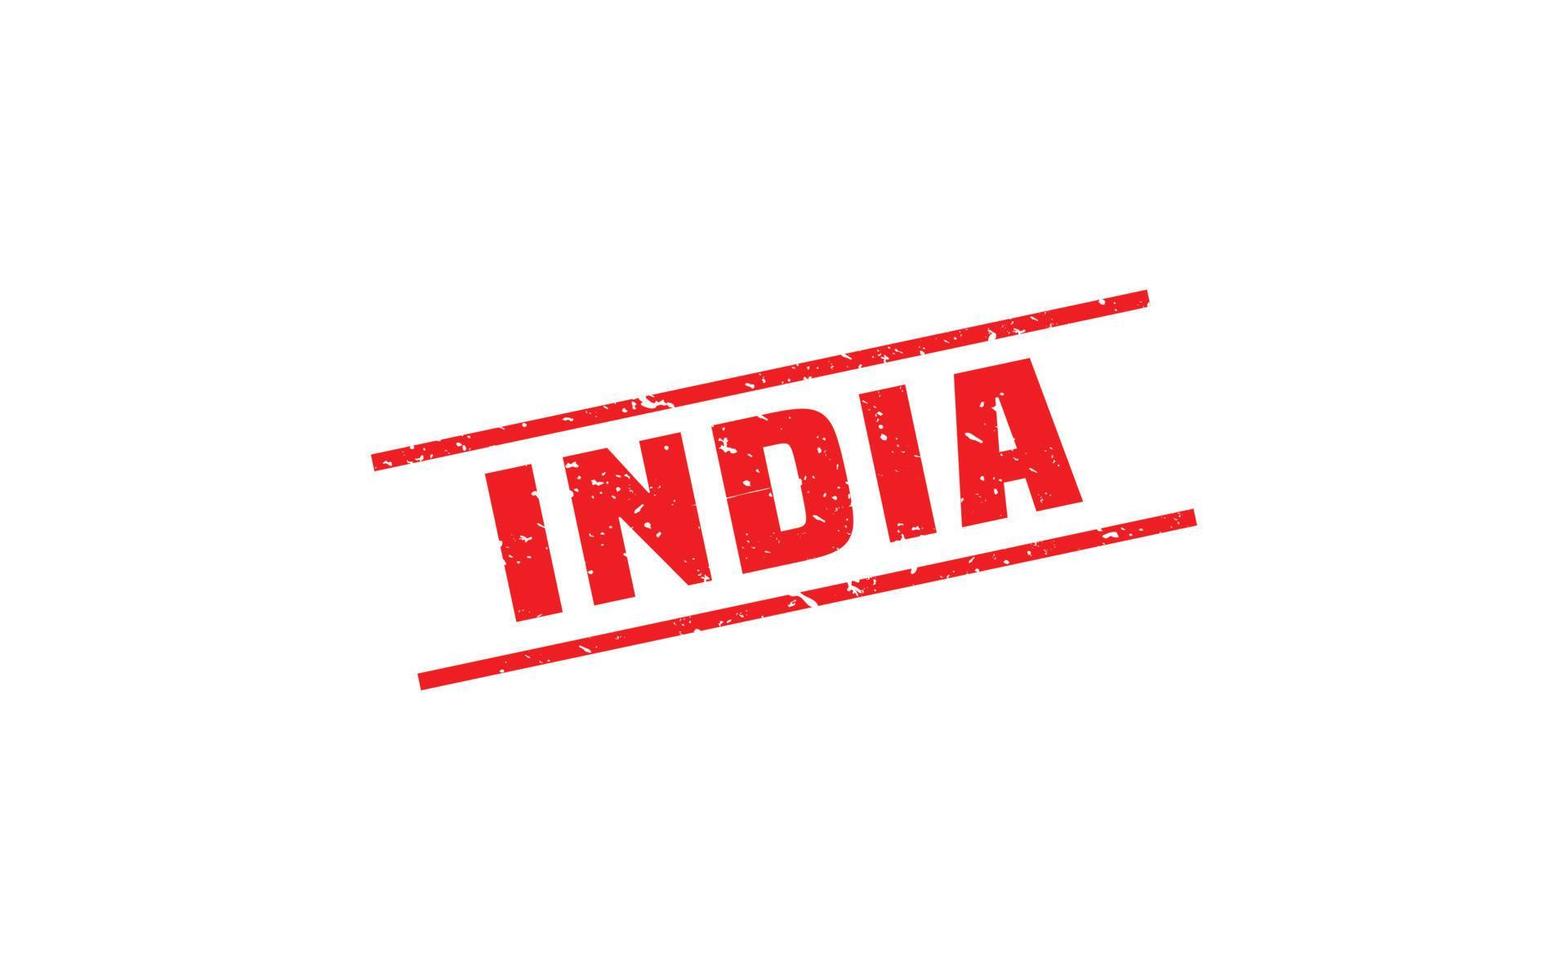 Indien Stempelgummi mit Grunge-Stil auf weißem Hintergrund vektor